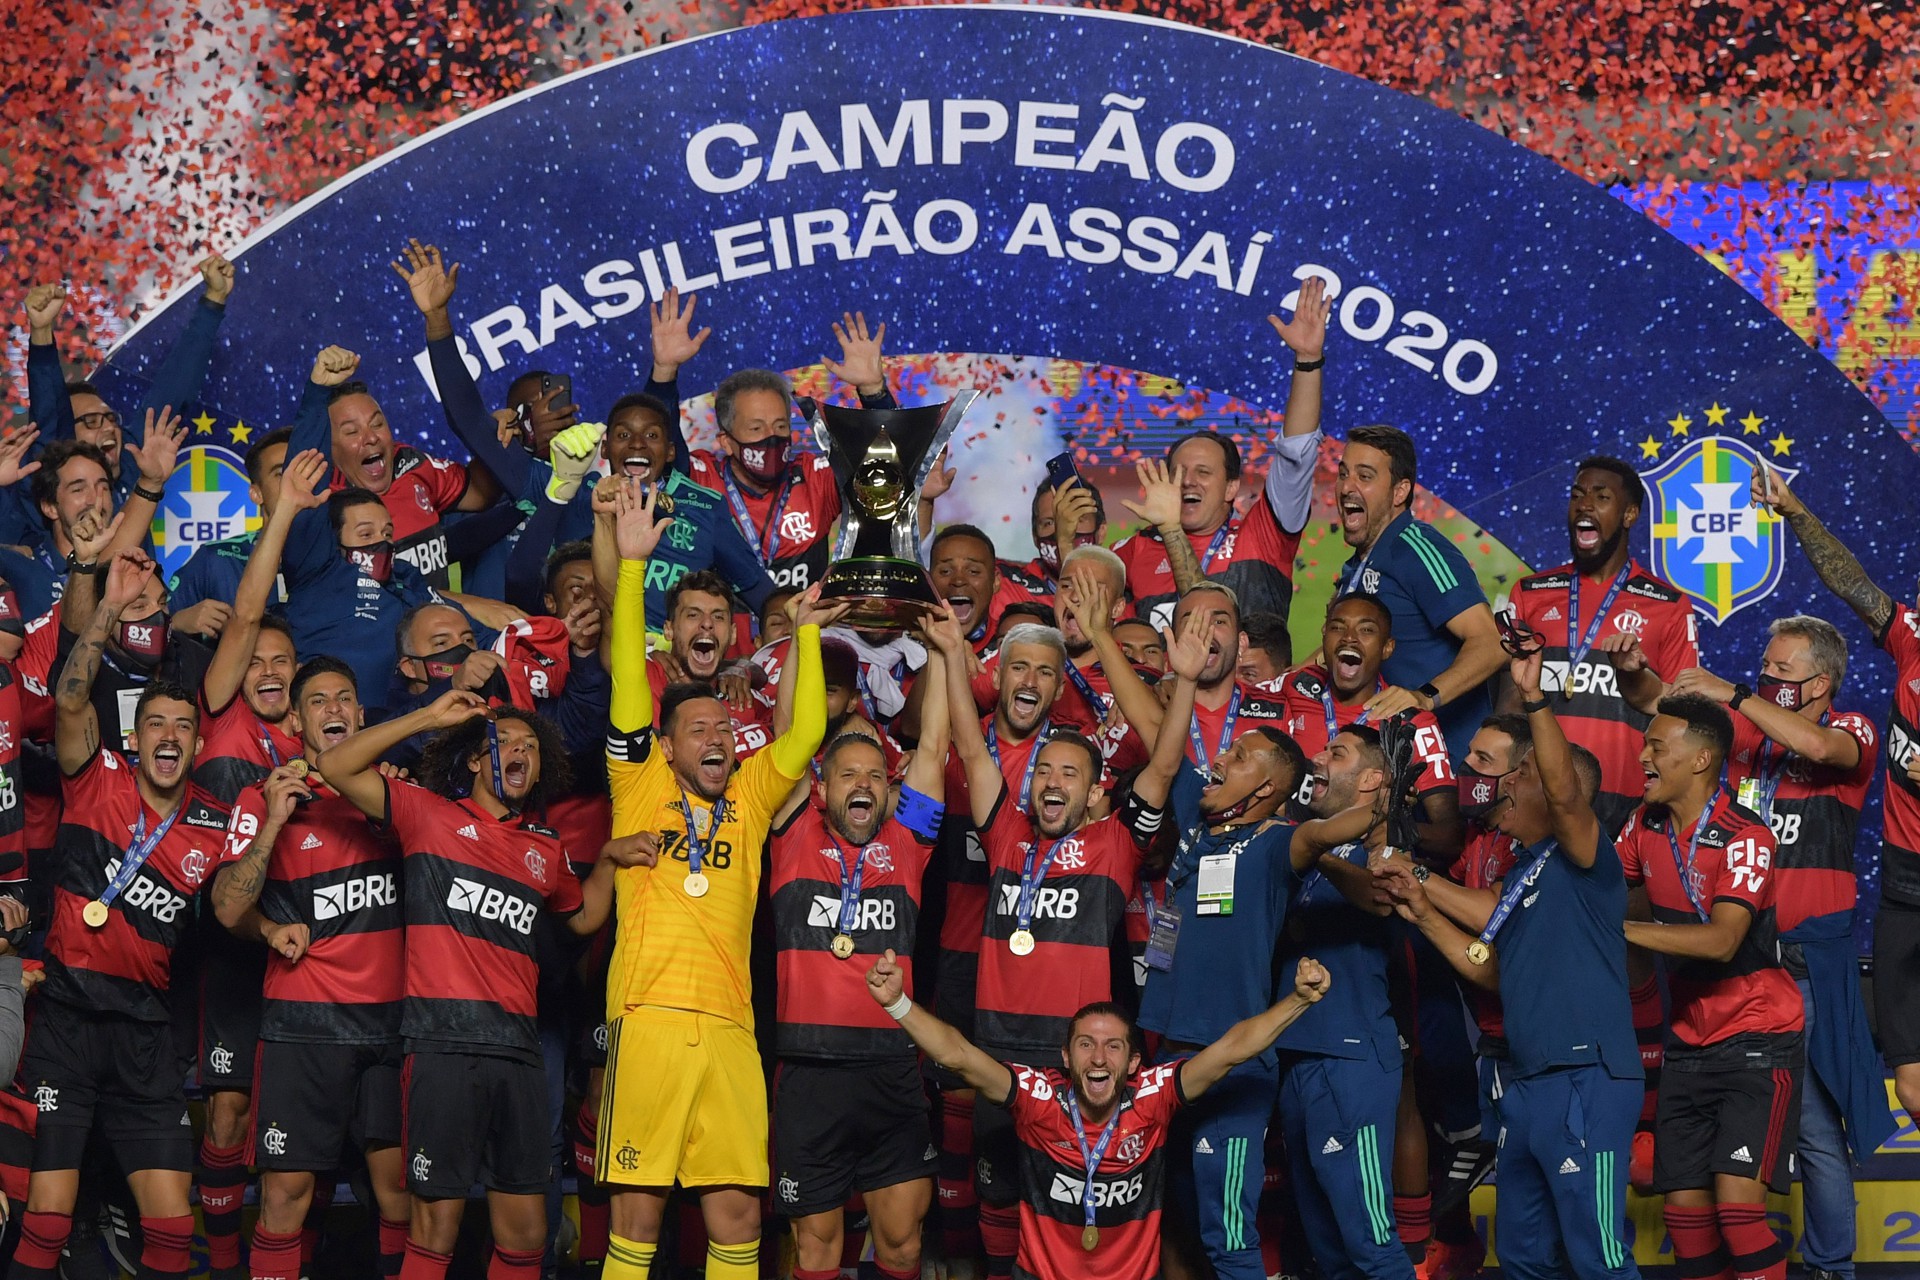 O capitão do Flamengo, Diego, segura o troféu ao comemorar com os companheiros após a conquista do campeonato brasileiro (Foto: NELSON ALMEIDA / AFP)